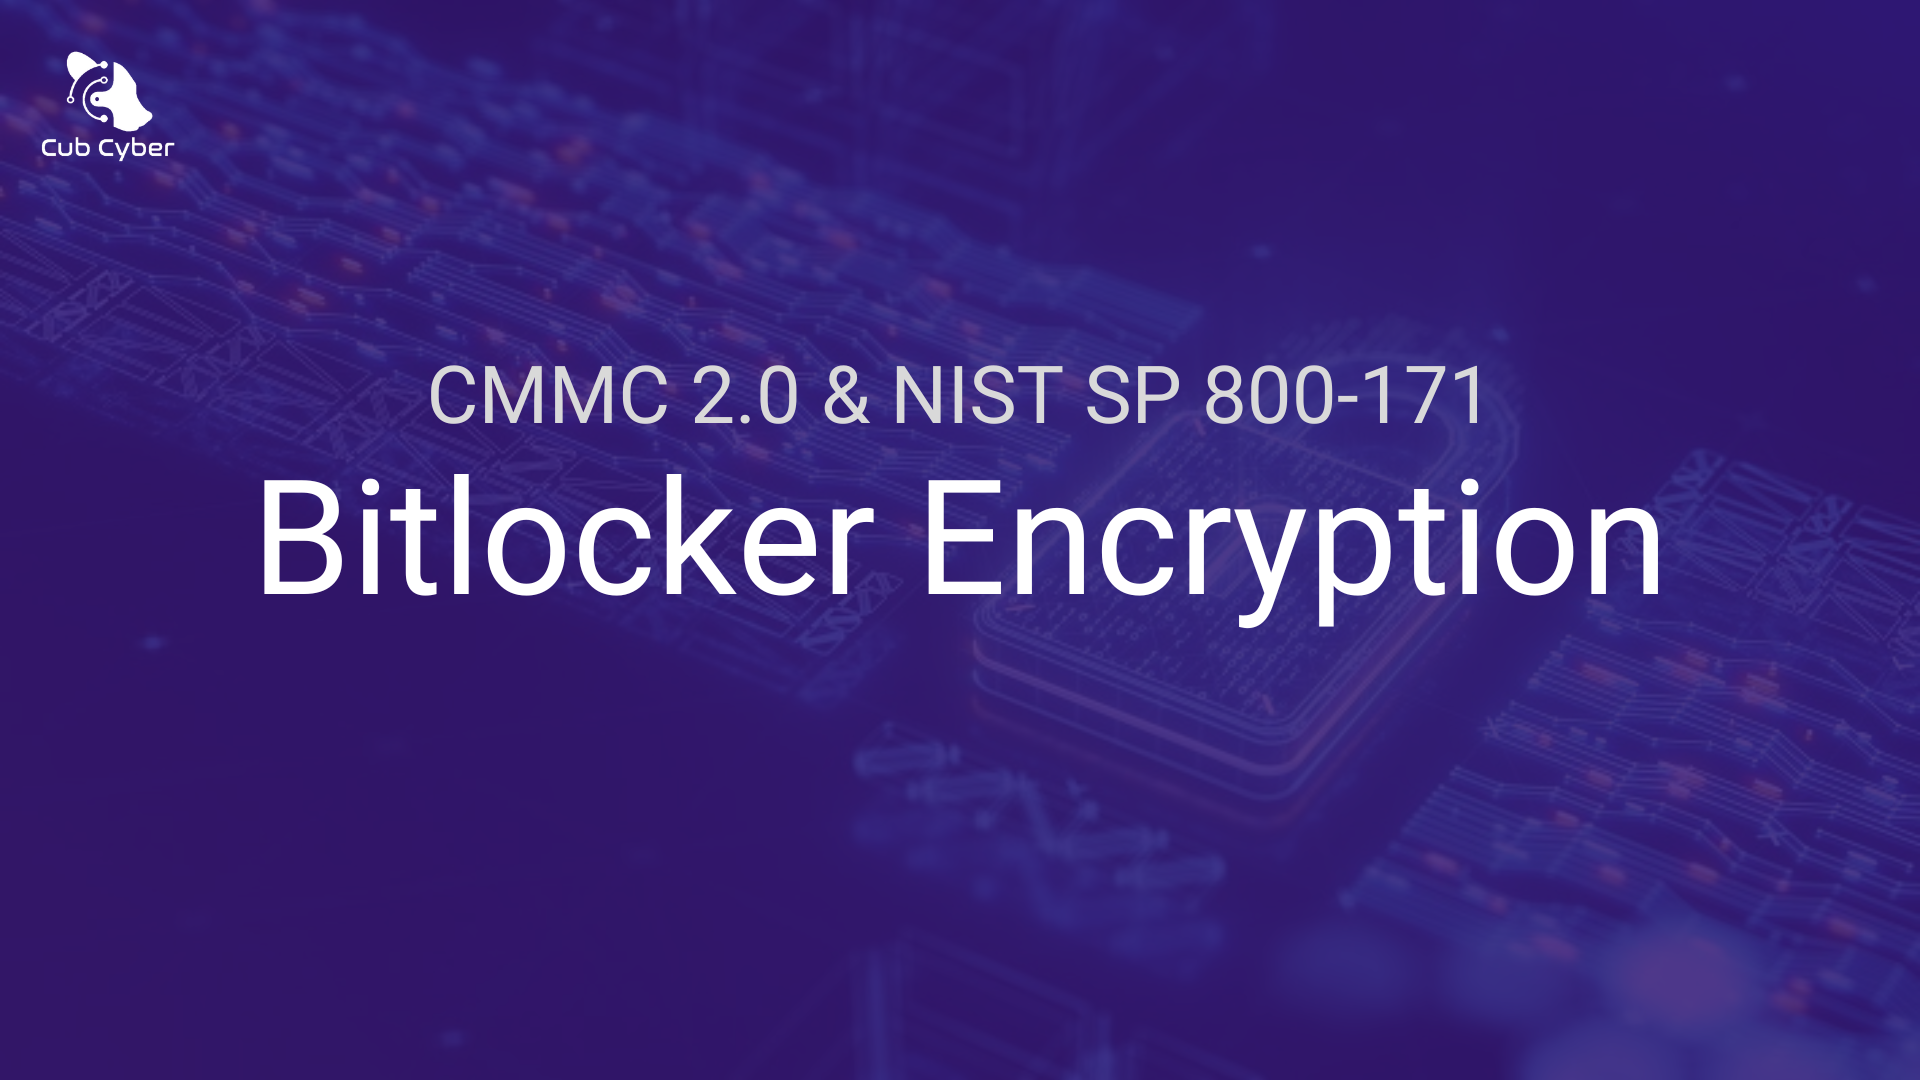 Is BitLocker NIST 800-171 Compliant